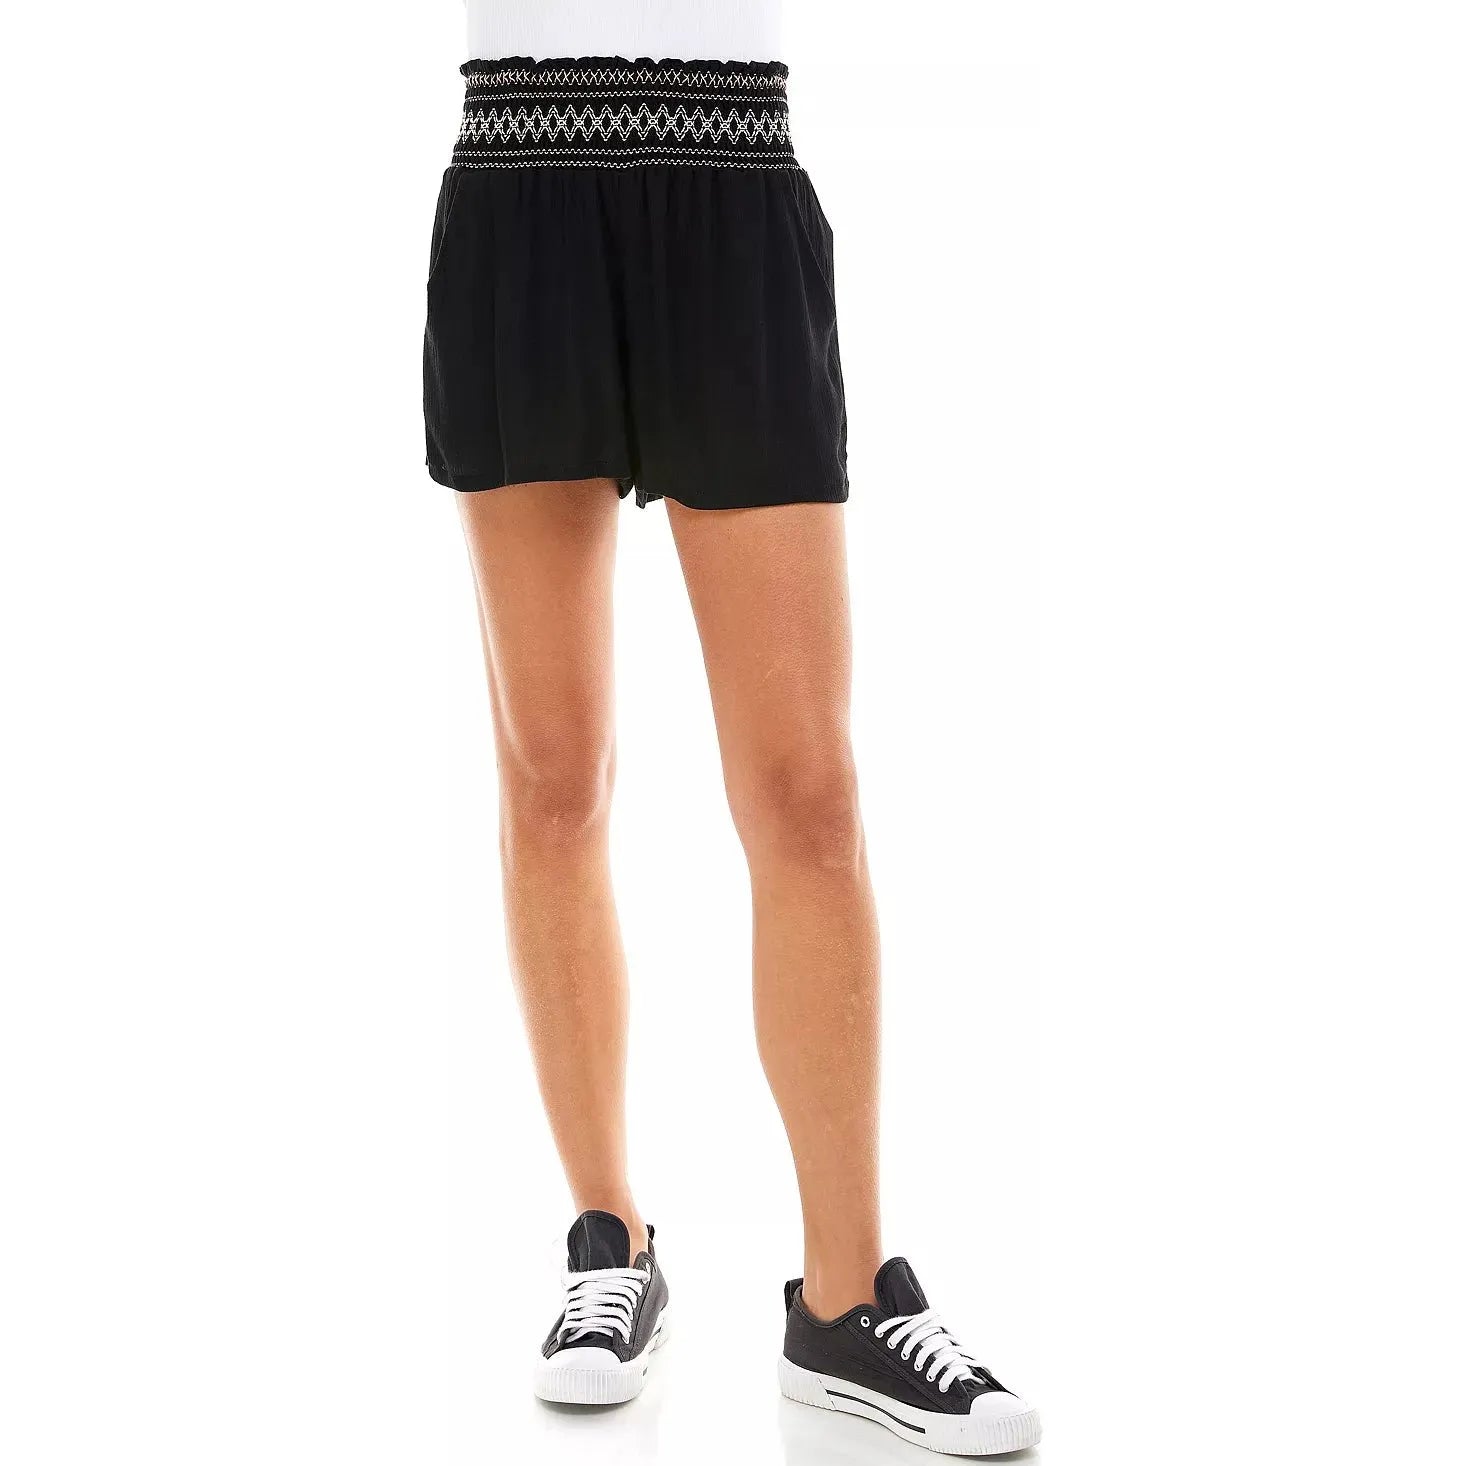 Be Bop-Be Bop Juniors Solid Smocked-Waist Shorts, Black, Size: S - Brandat Outlet